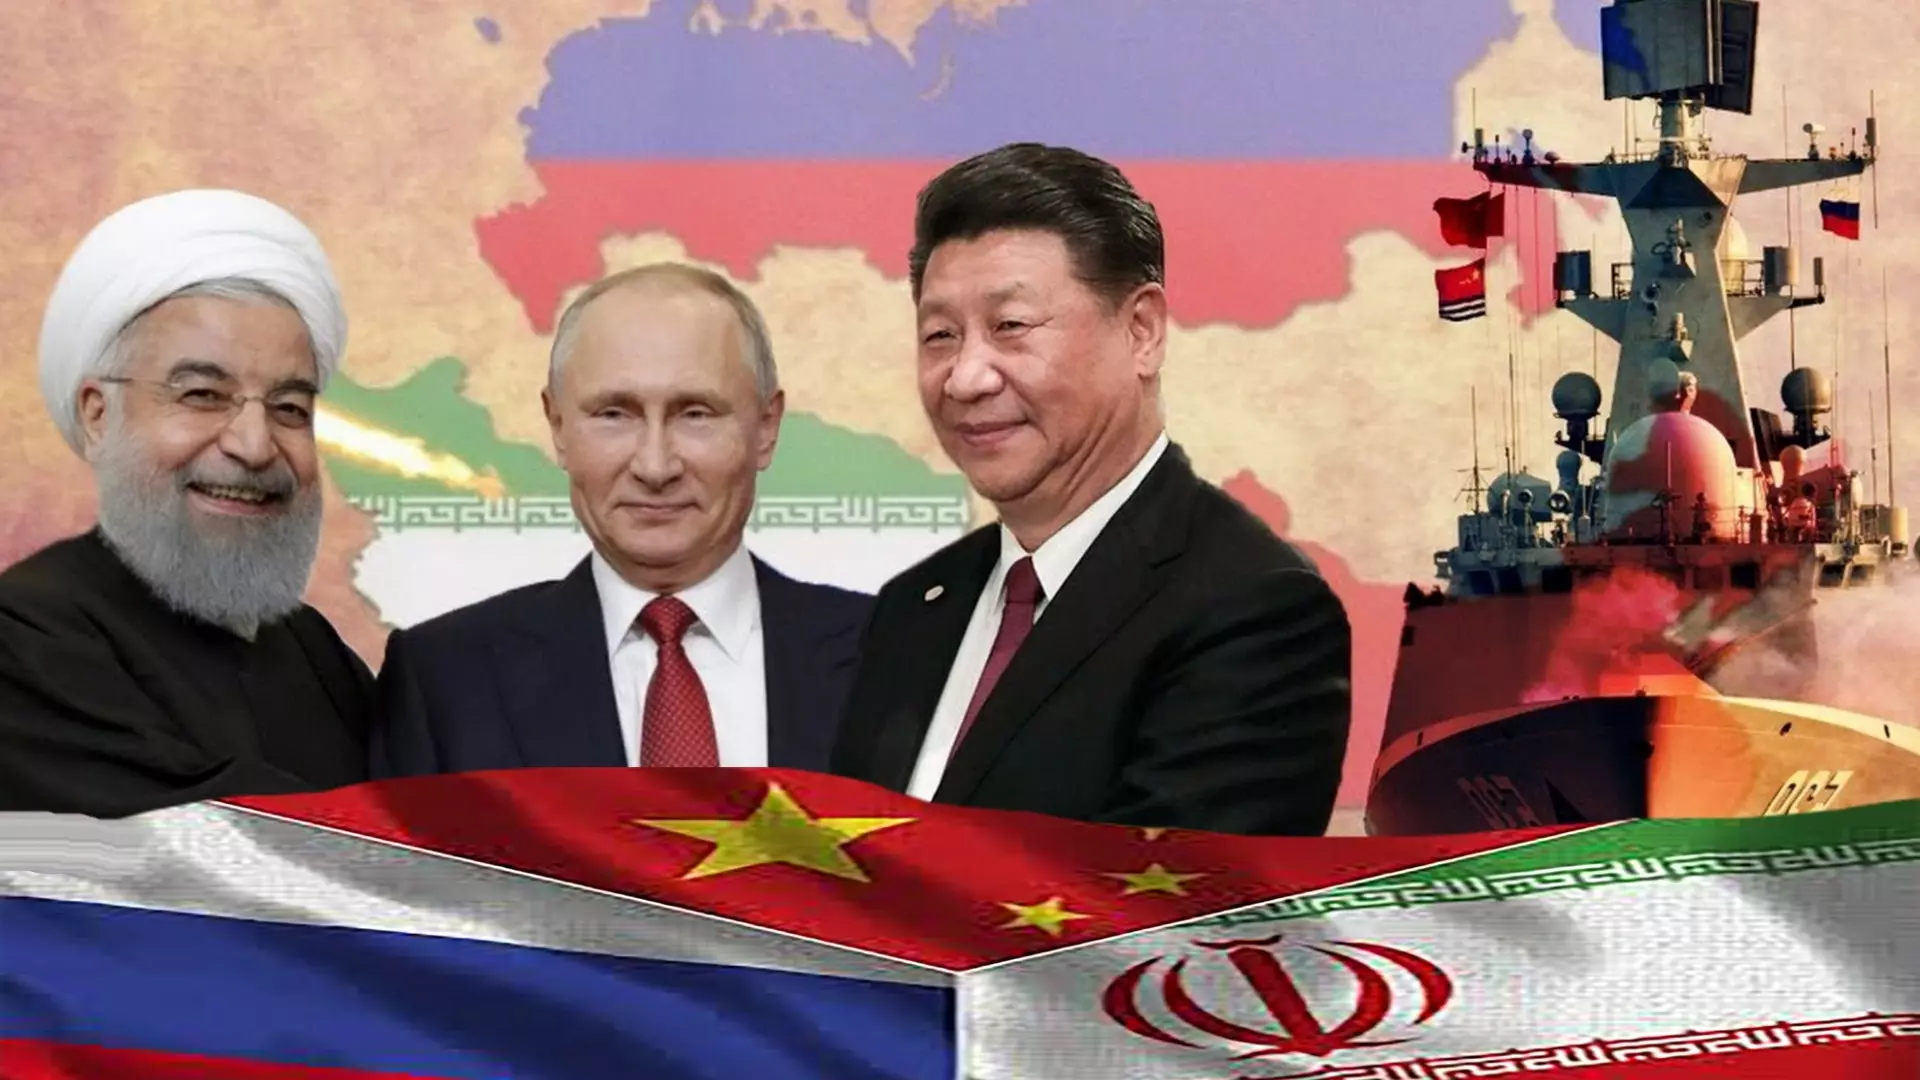 Вместе России, Китаю и Ирану намного легче справиться с западными санкциями, чем порознь